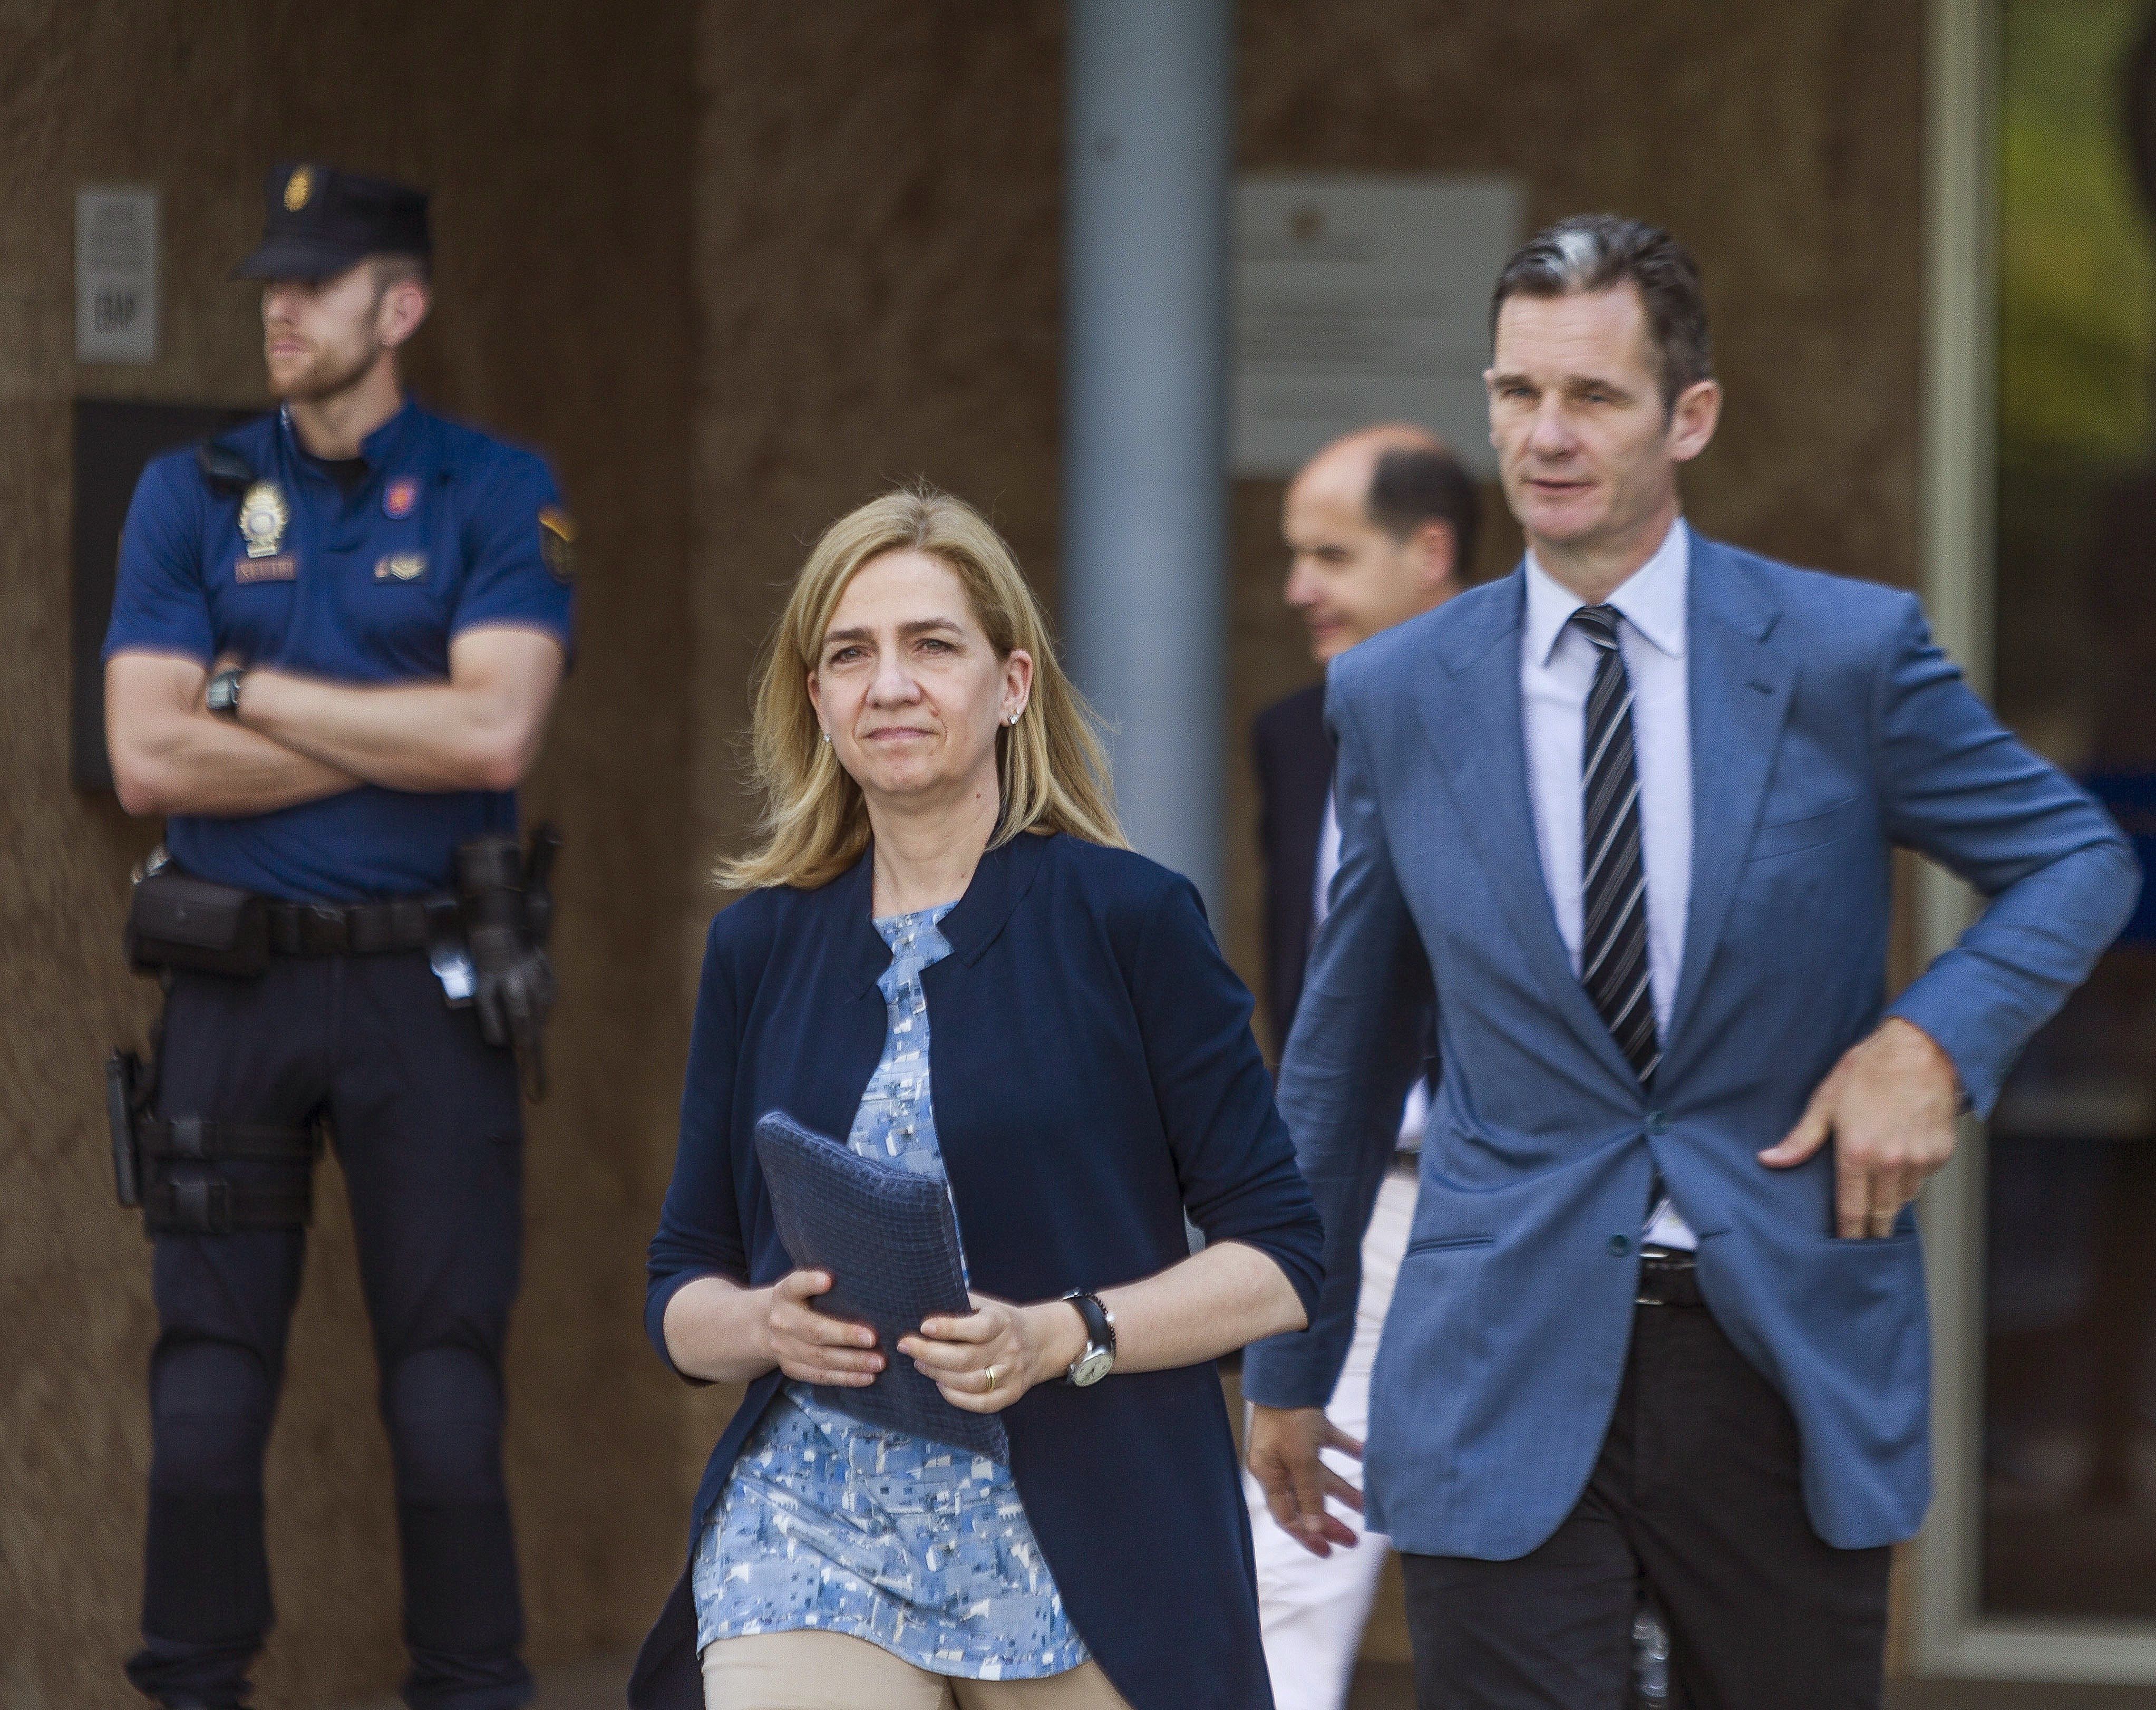 Multa per a la Infanta i 6 anys de presó per a Urdangarin